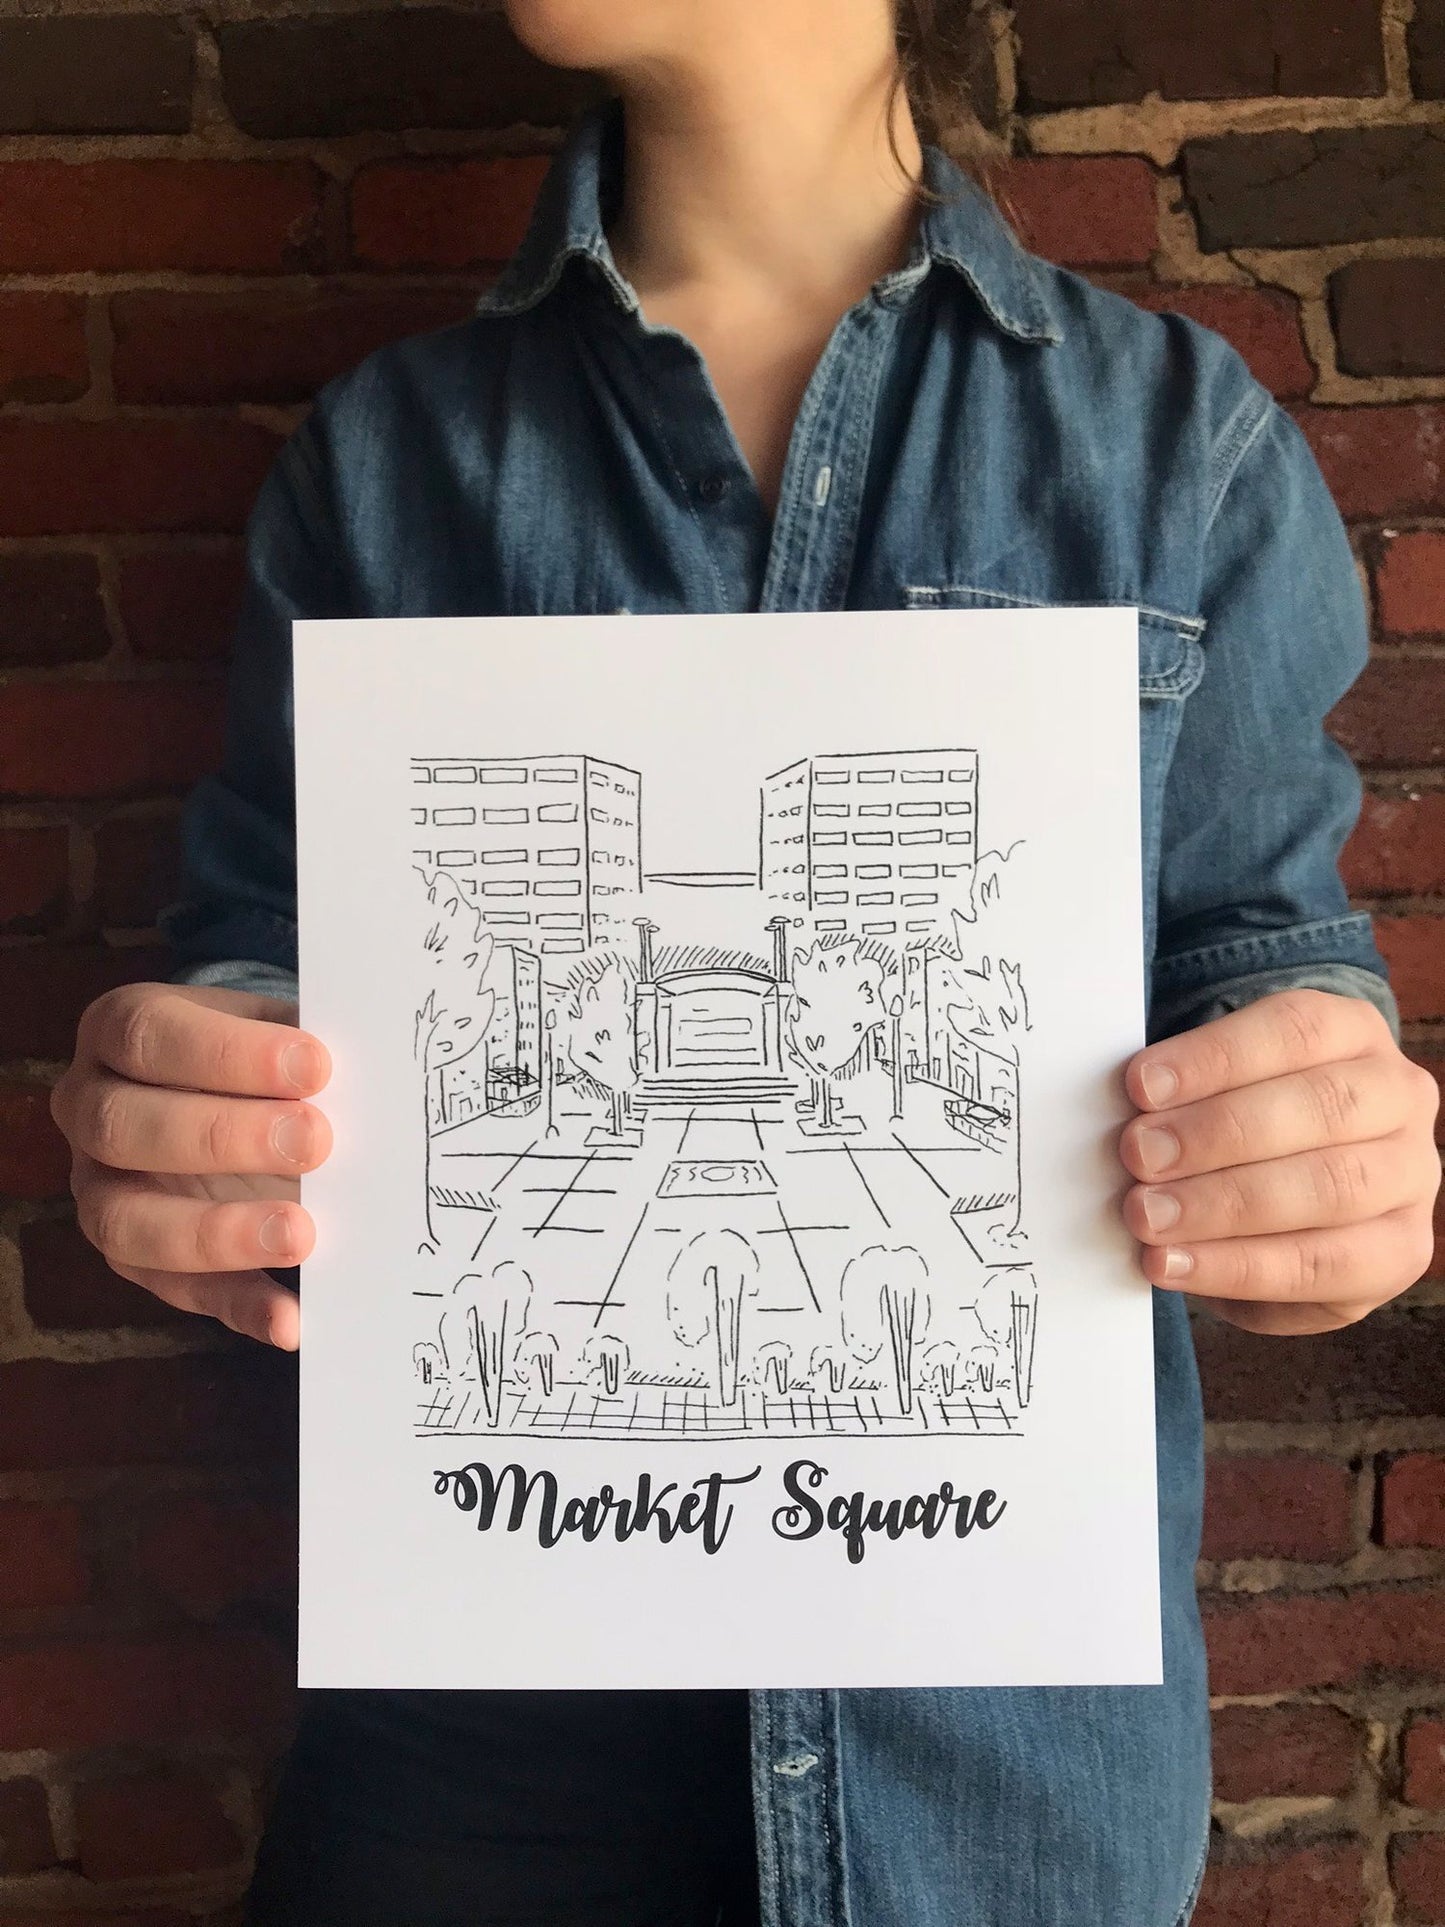 Market Square  - Print - 8x10"